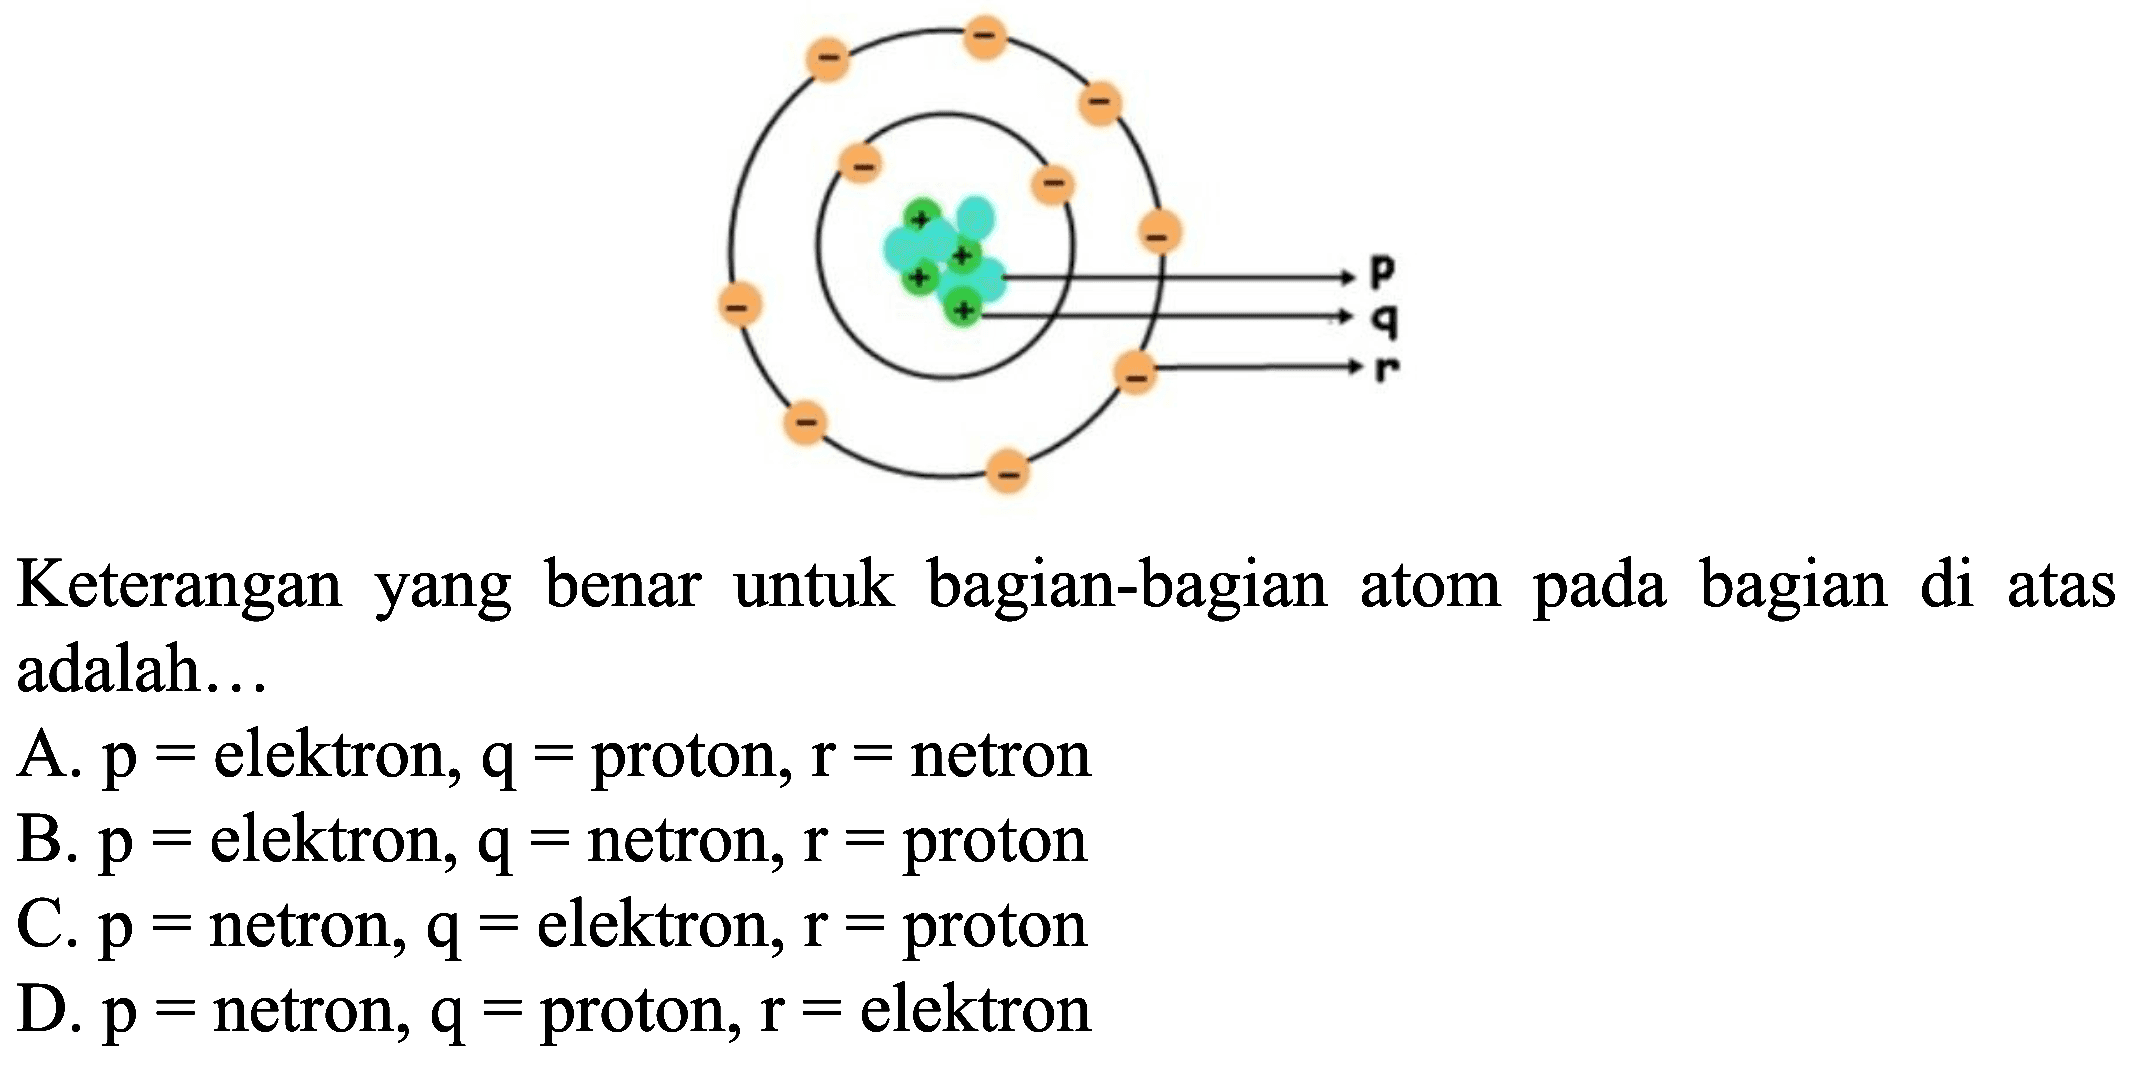 Keterangan yang benar untuk bagian-bagian atom pada bagian di atas adalah...
A.  p=  elektron,  q=  proton,  r=  netron
B.  p=  elektron,  q=  netron,  r=  proton
C.  p=  netron,  q=  elektron,  r=  proton
D.  p=  netron,  q=  proton,  r=  elektron